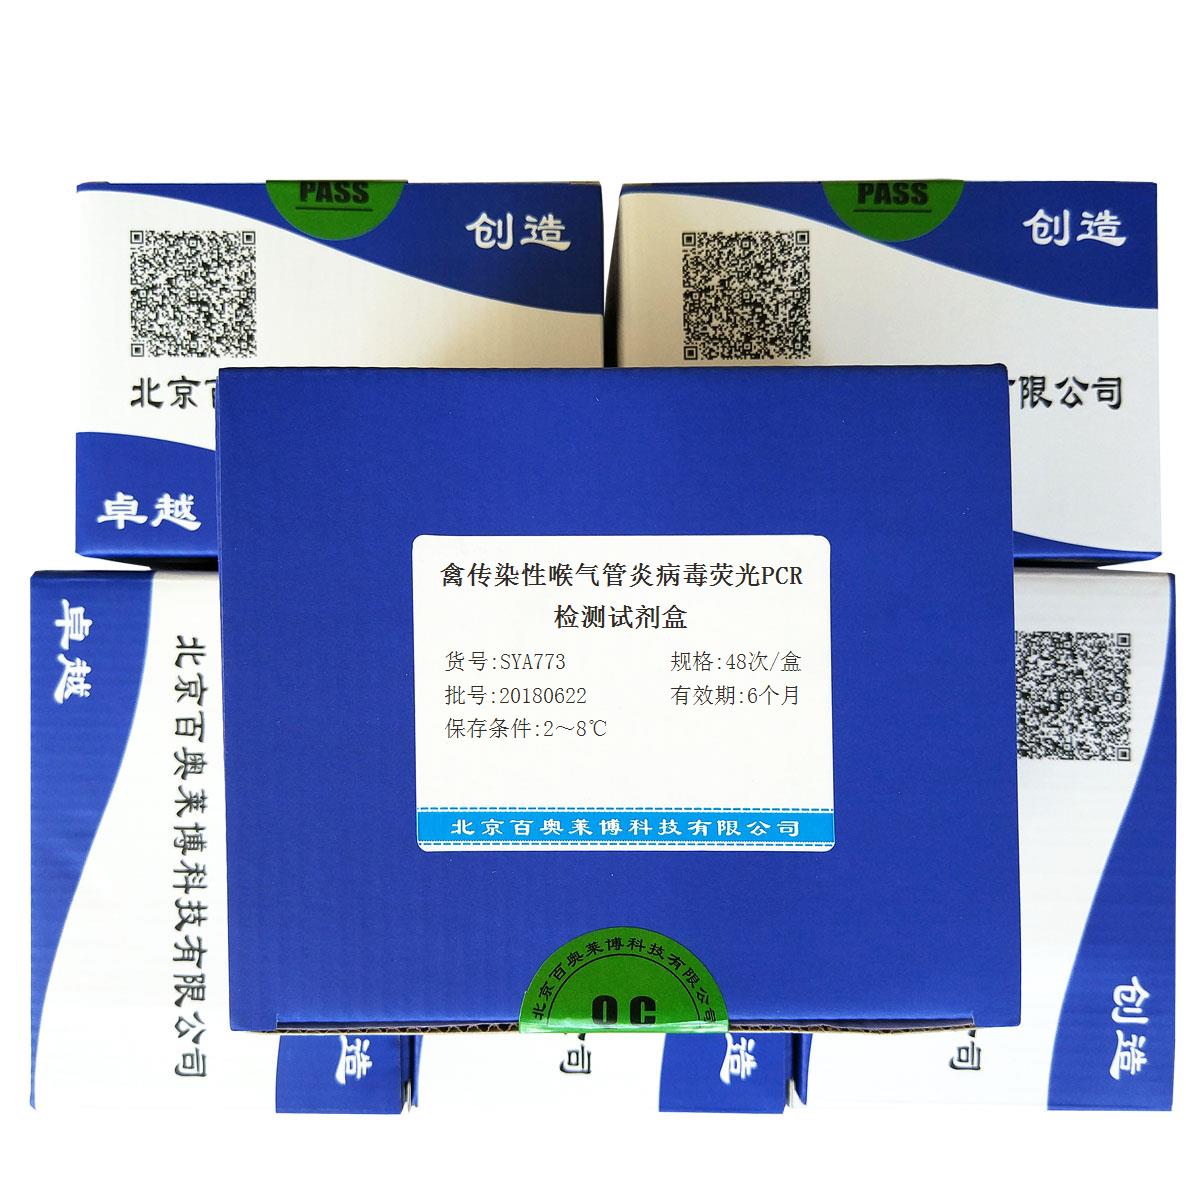 北京现货禽传染性喉气管炎病毒荧光PCR检测试剂盒(国产,进口)